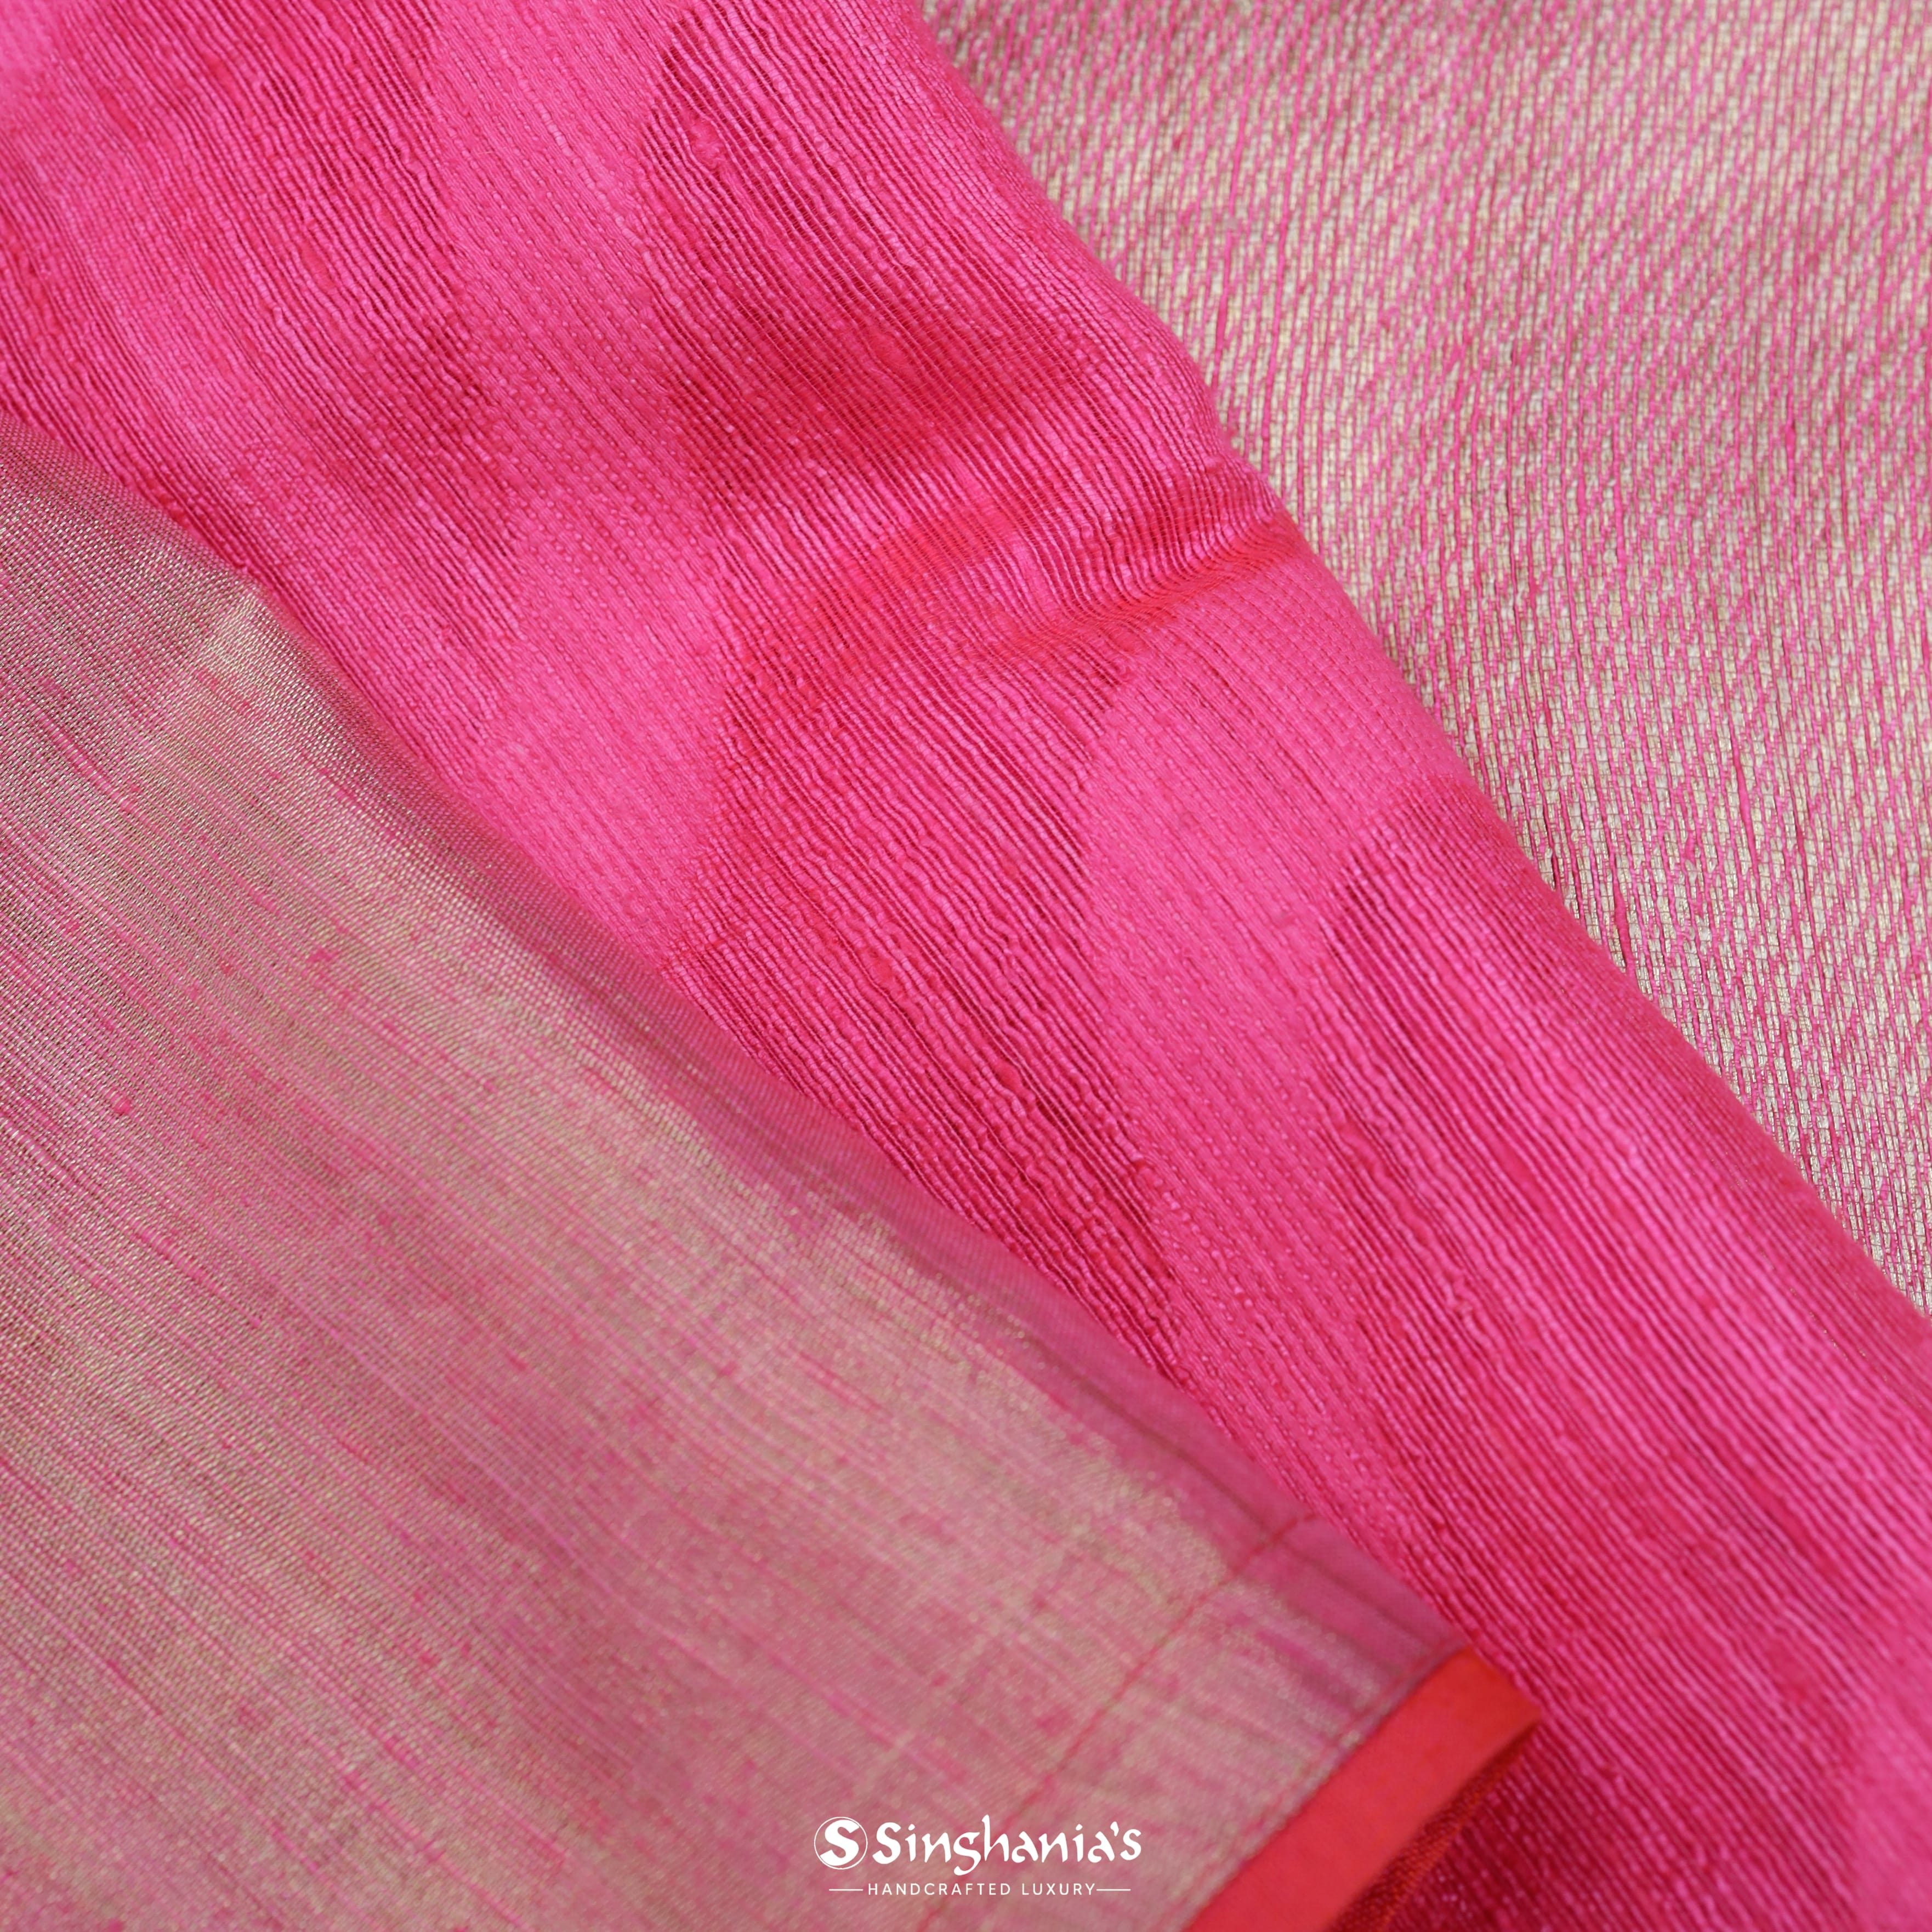 Hot Pink Matka Printed Saree